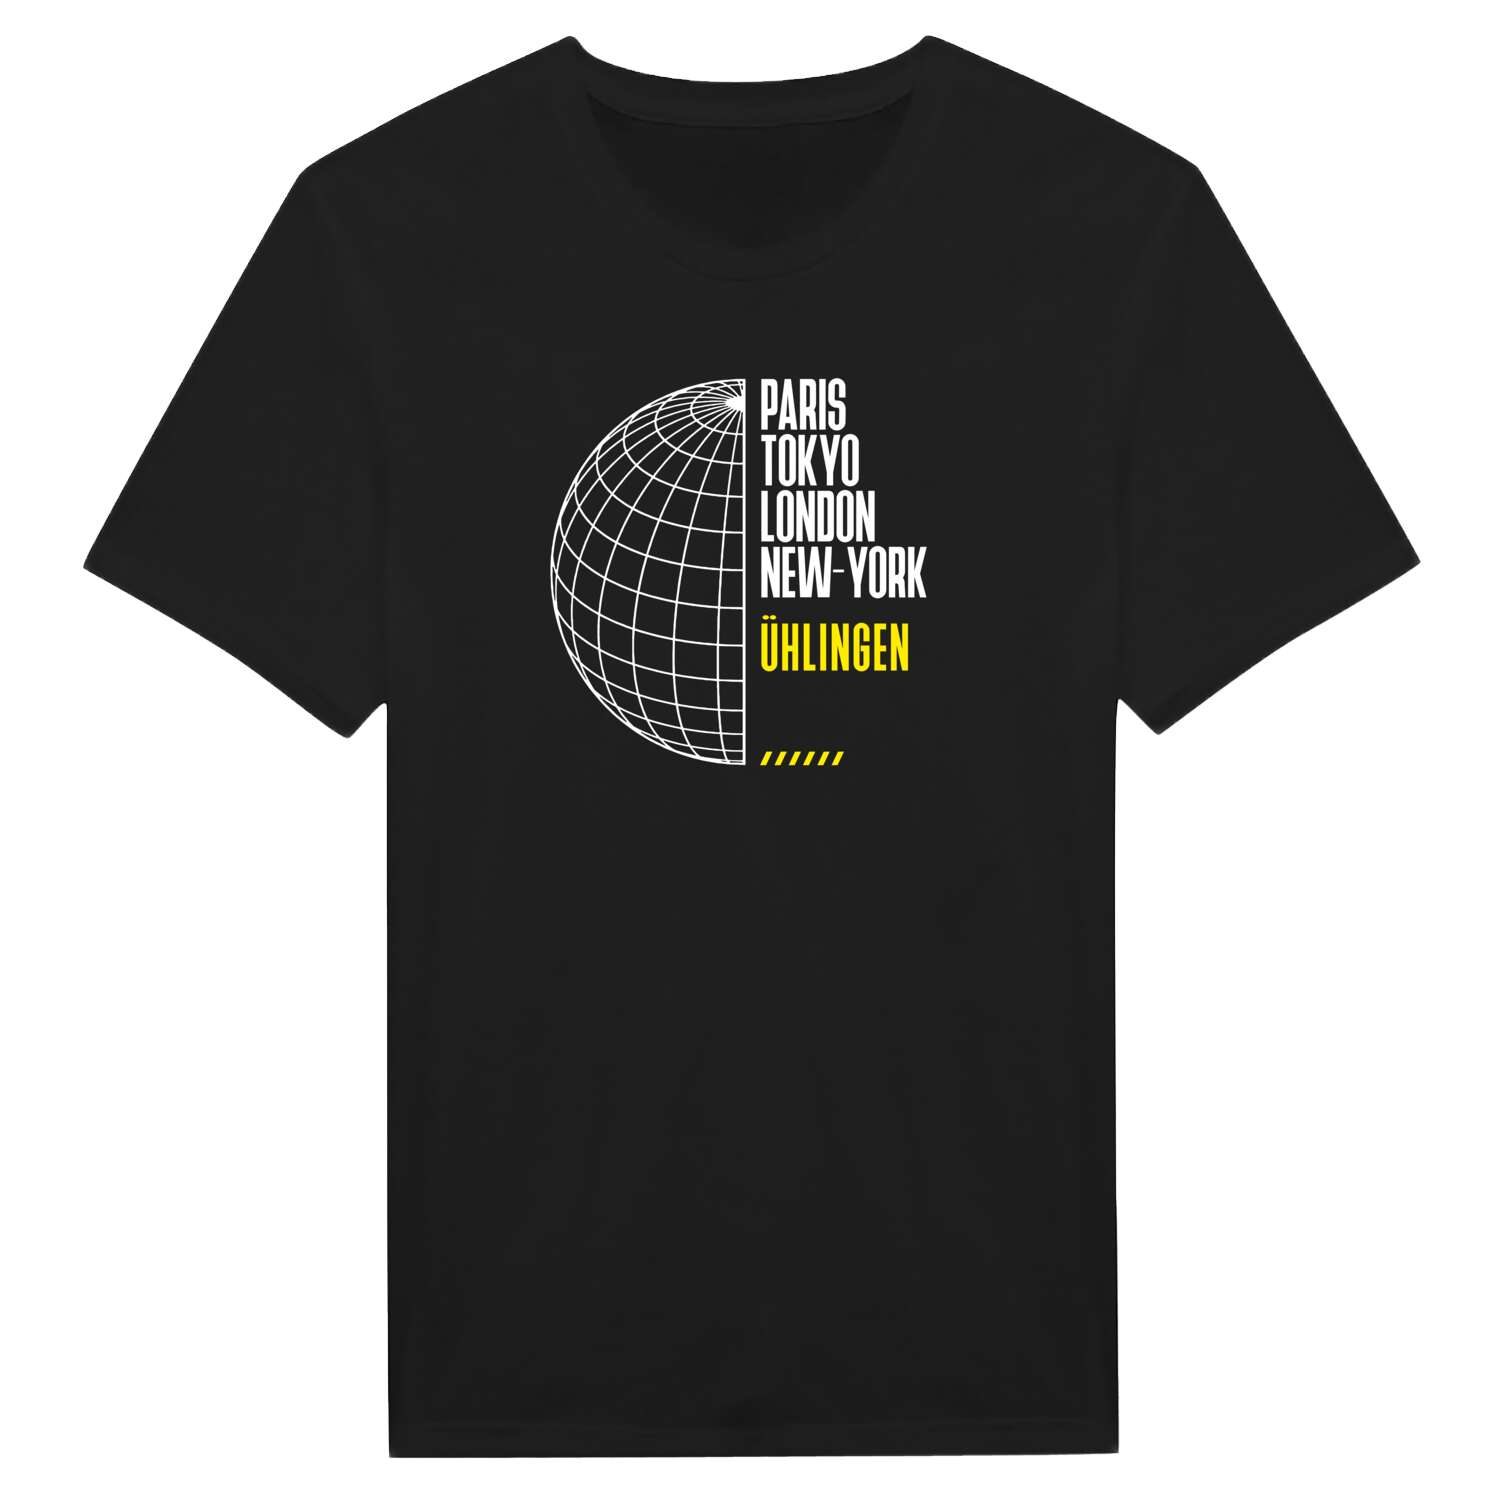 Ühlingen T-Shirt »Paris Tokyo London«